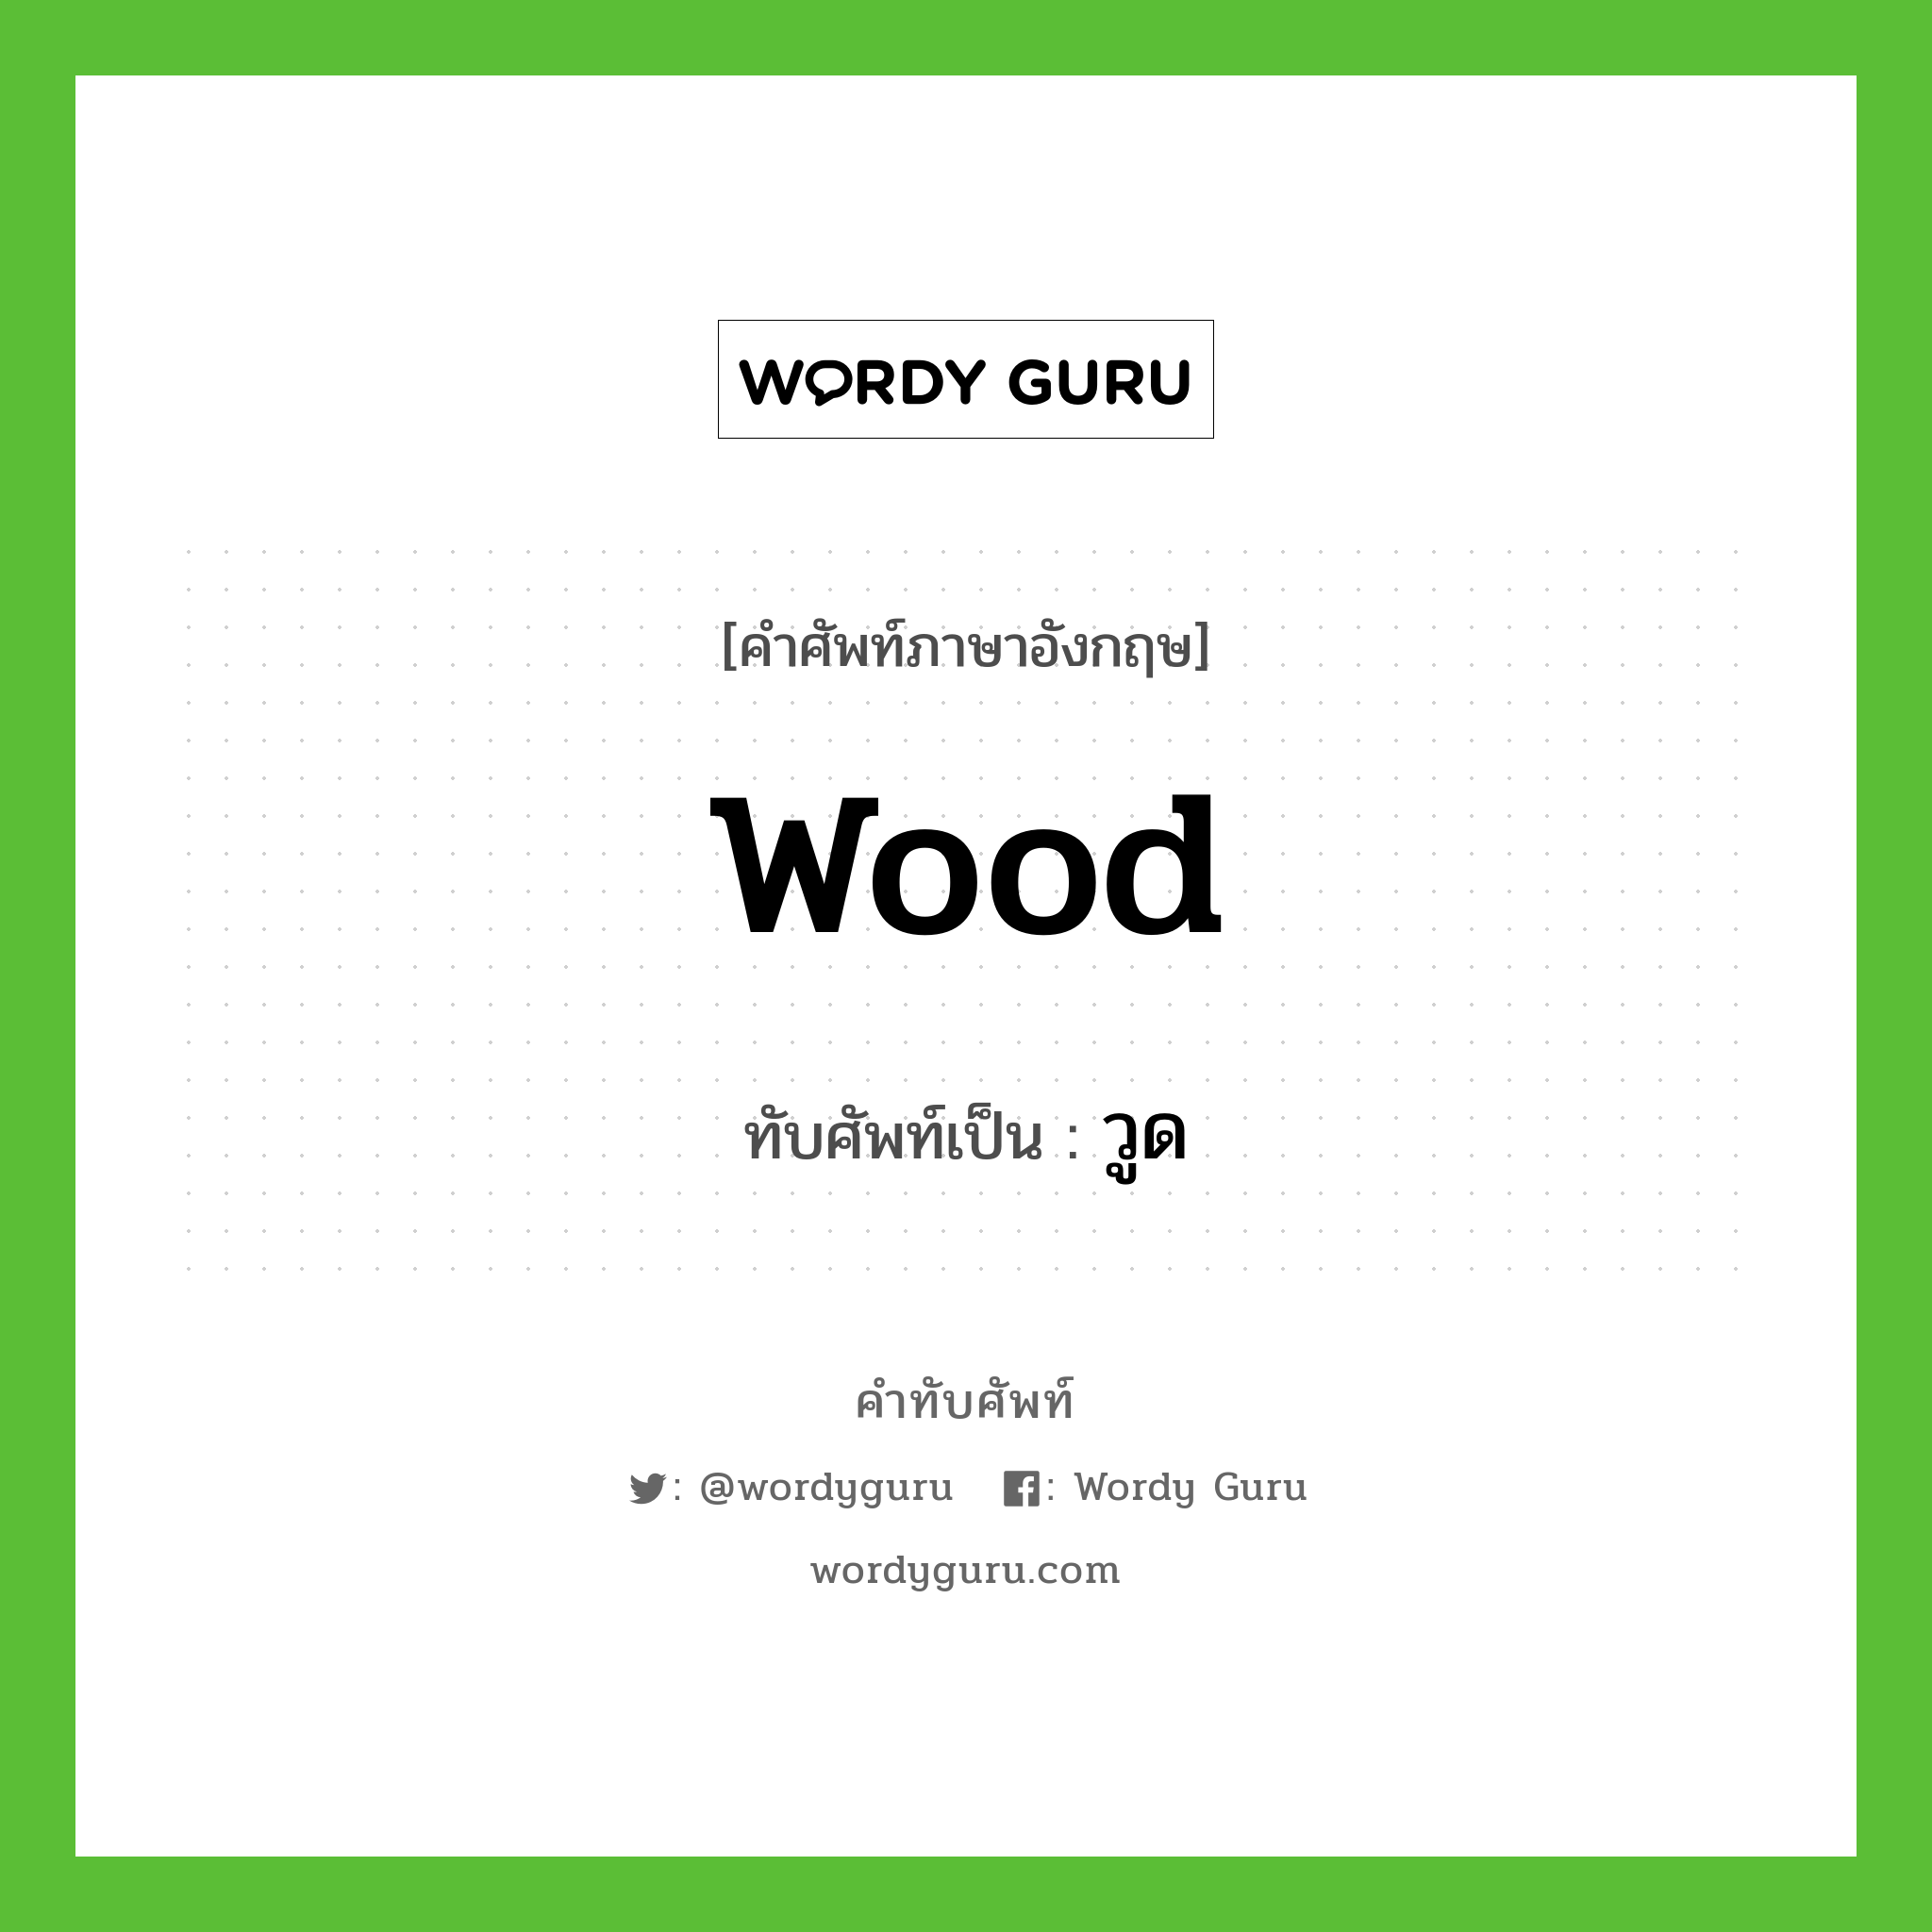 wood เขียนเป็นคำไทยว่าอะไร?, คำศัพท์ภาษาอังกฤษ wood ทับศัพท์เป็น วูด